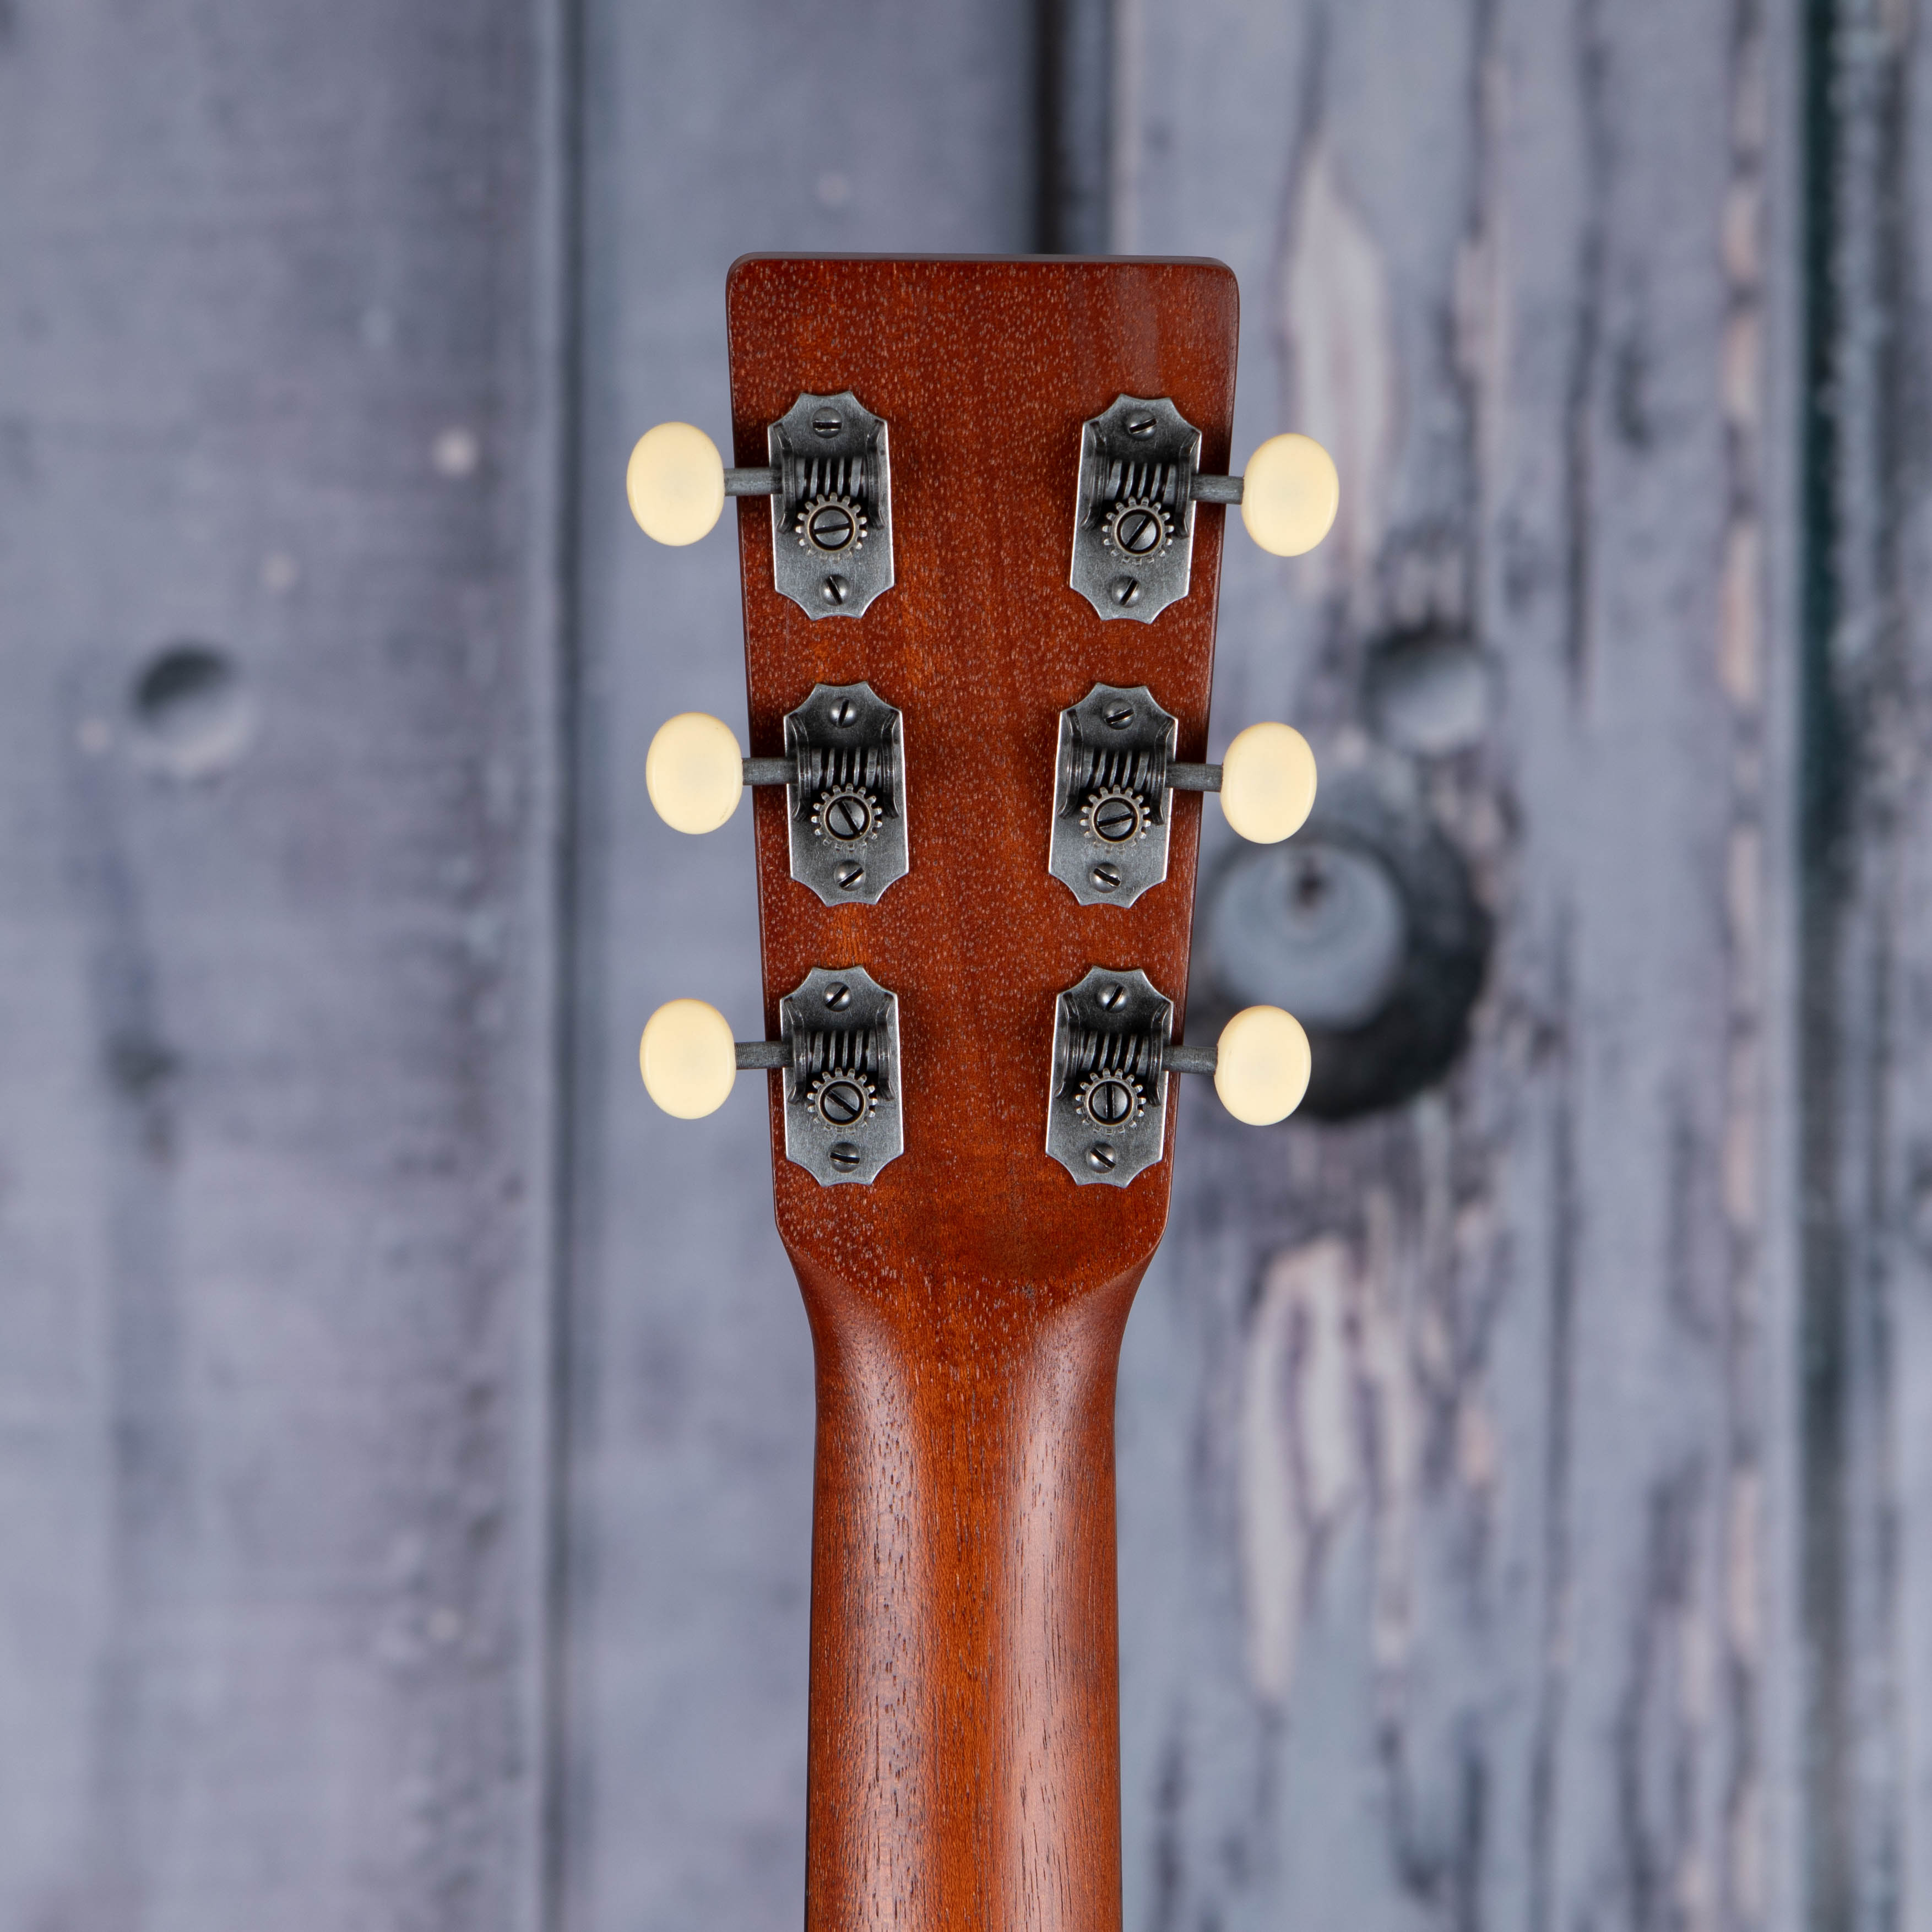 Martin DSS-17 Acoustic Guitar, Whiskey Sunset, back headstock